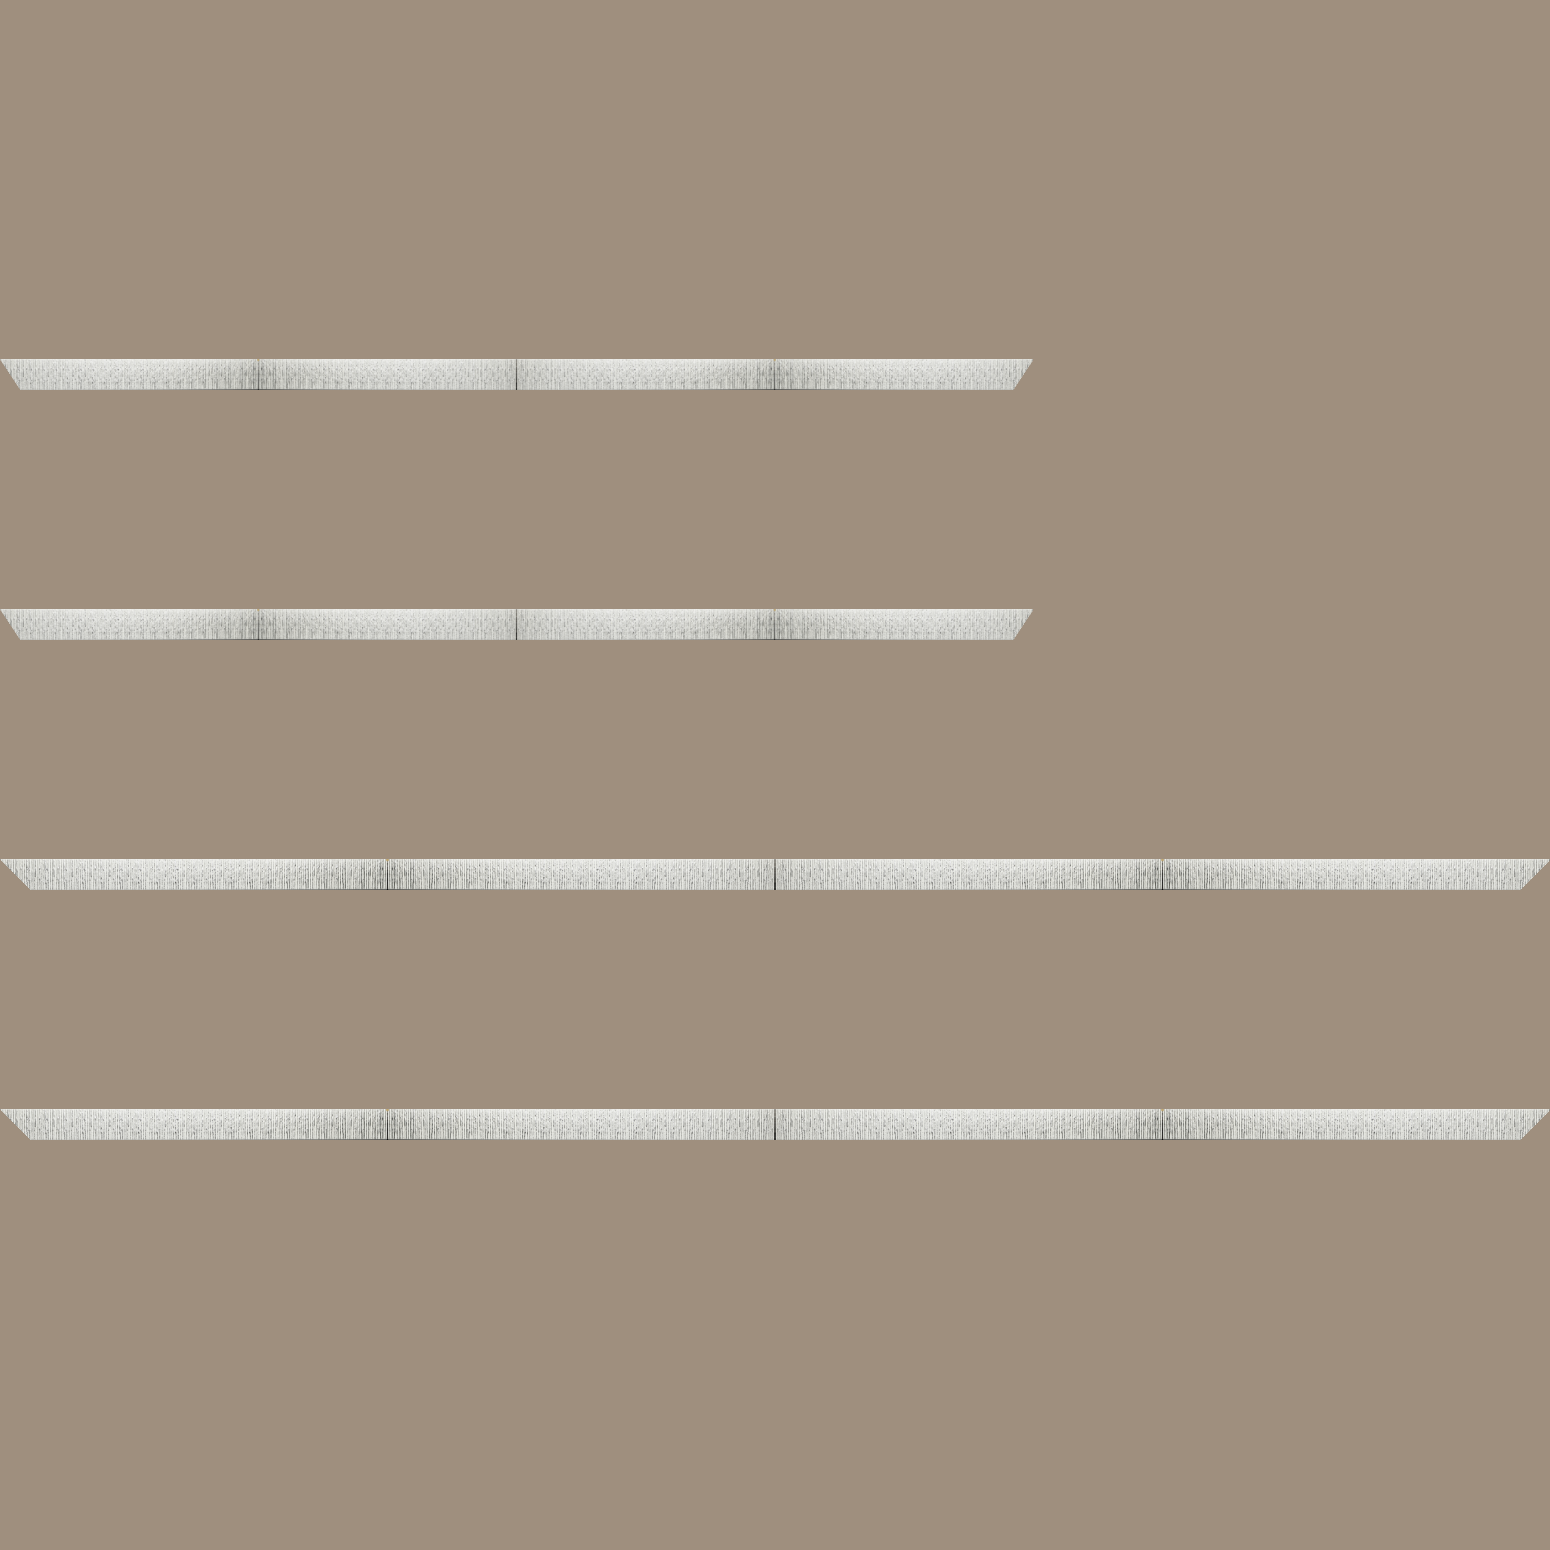 Baguette bois profil plat largeur 10.5cm couleur blanc mat strié argent chromé en relief - 59.4x84.1